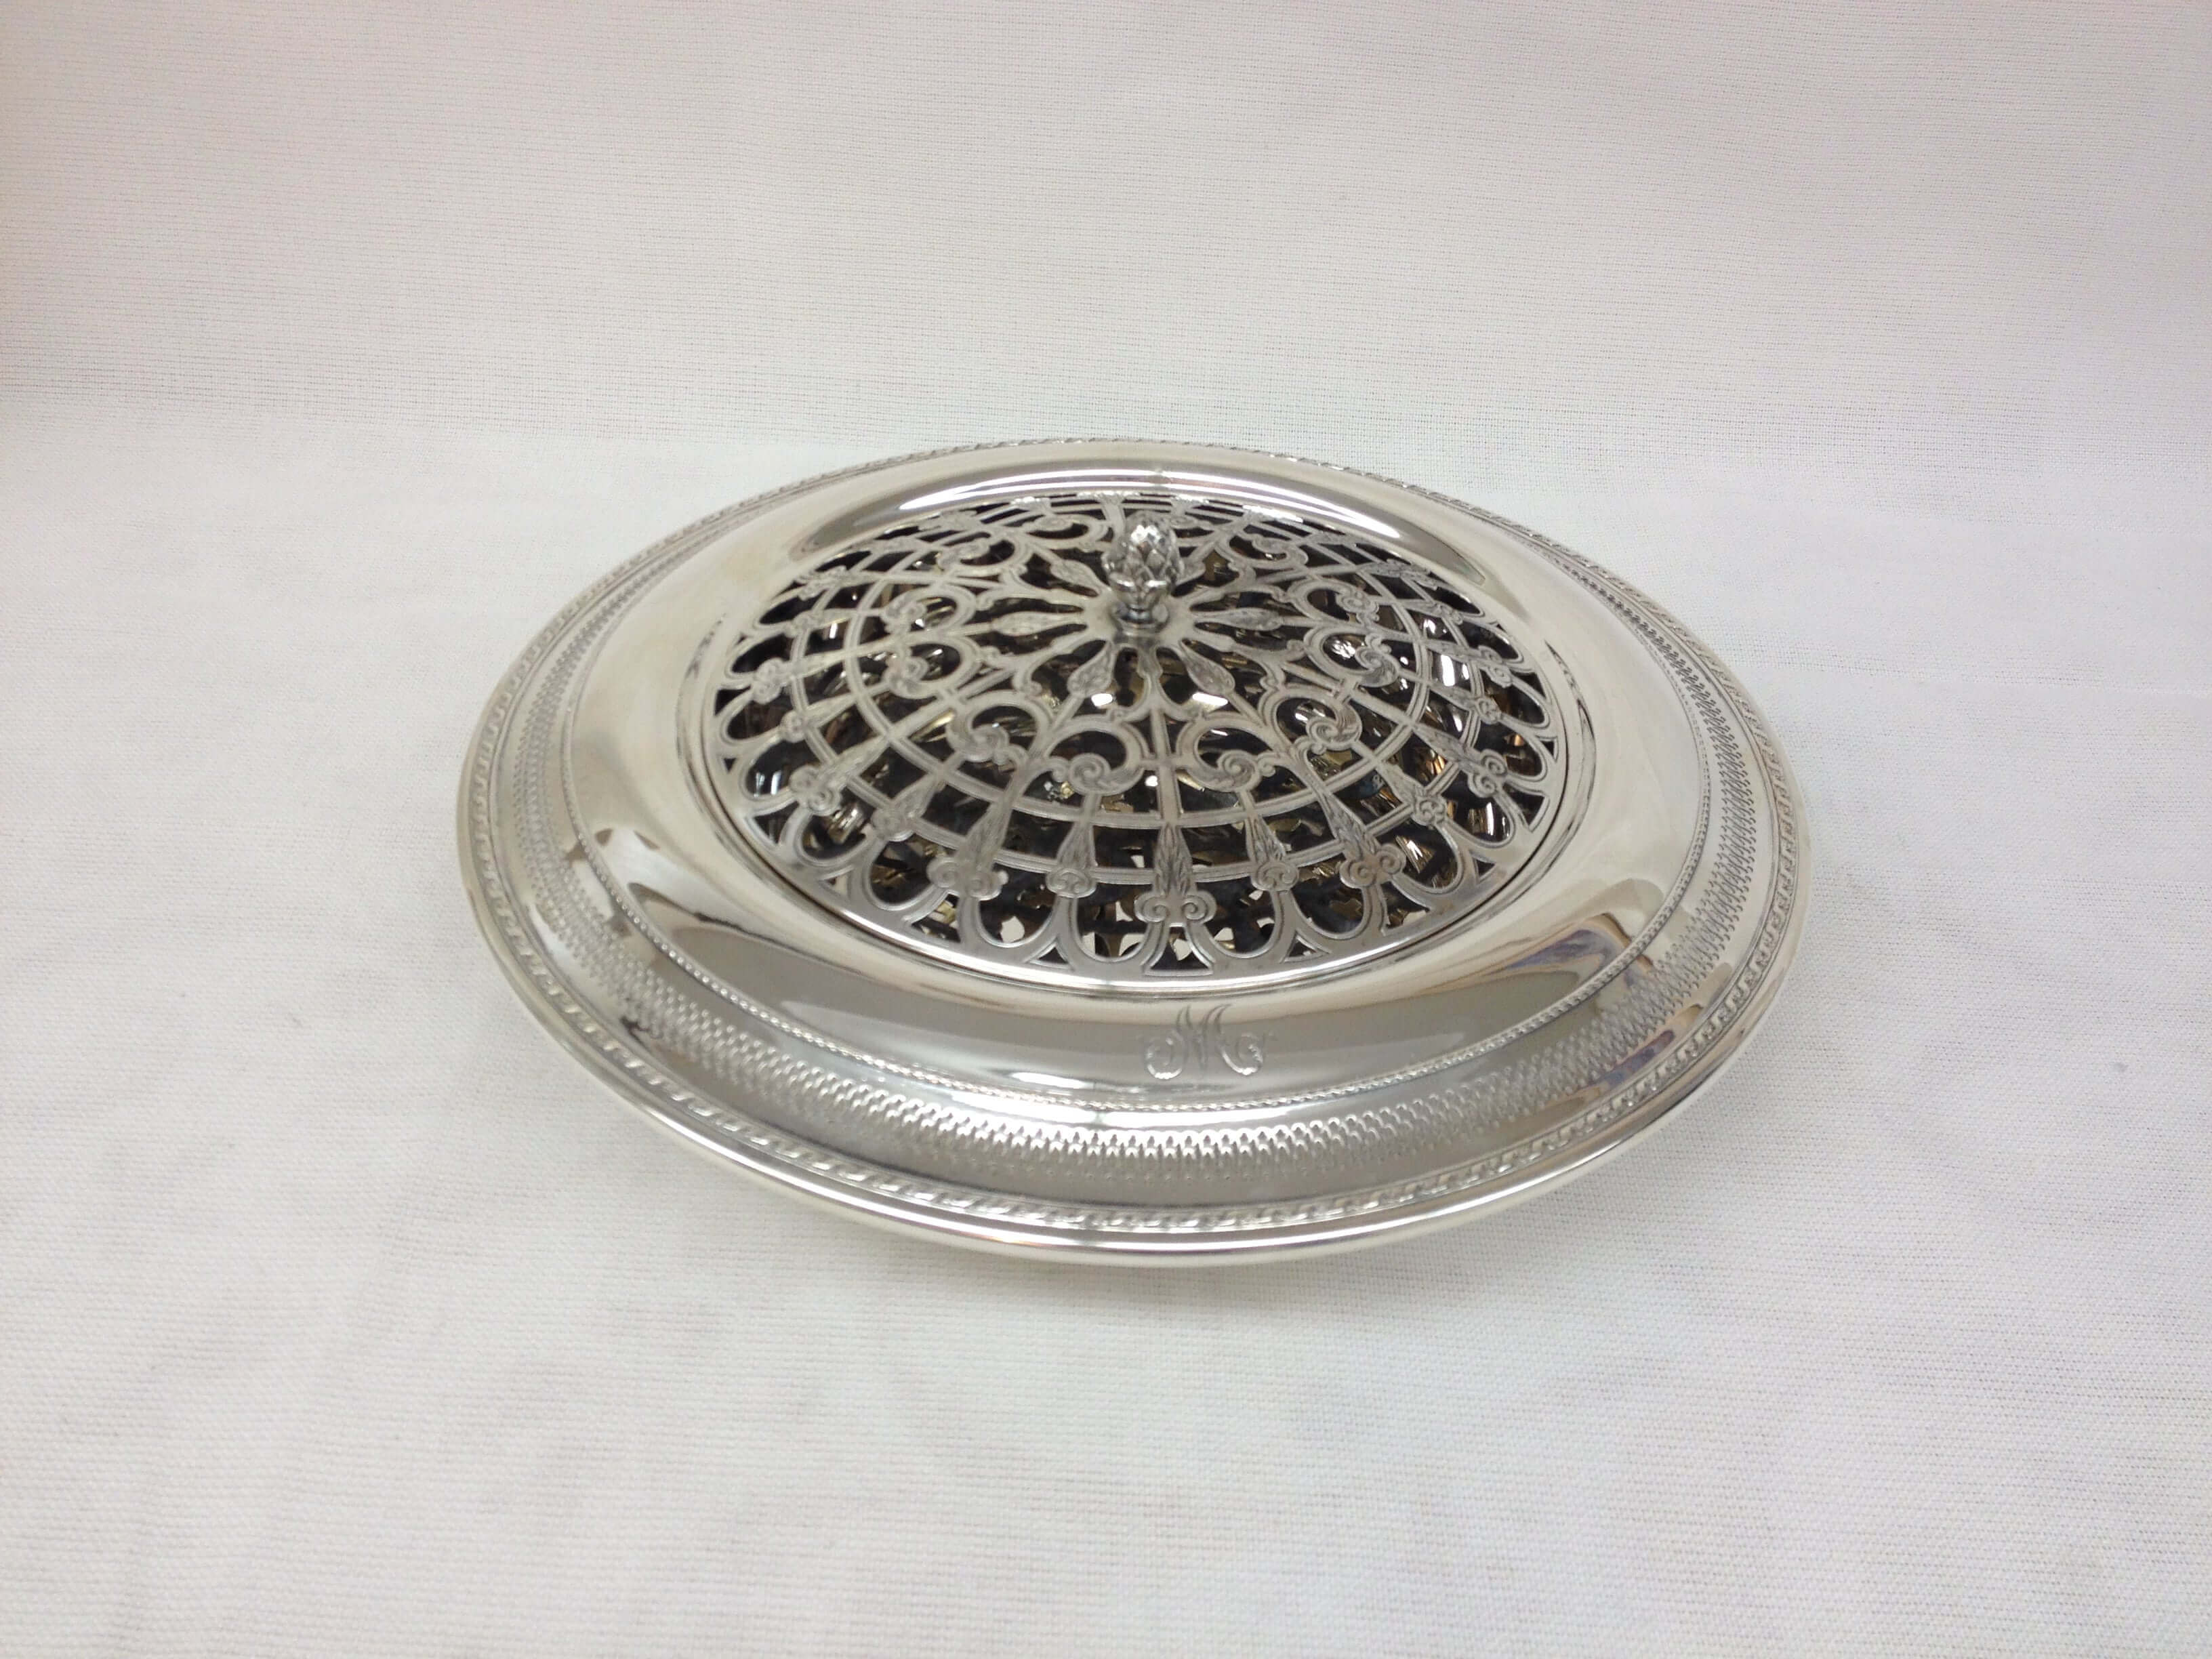 Antique Silver Serving Dish - Piece By Zion Hadad